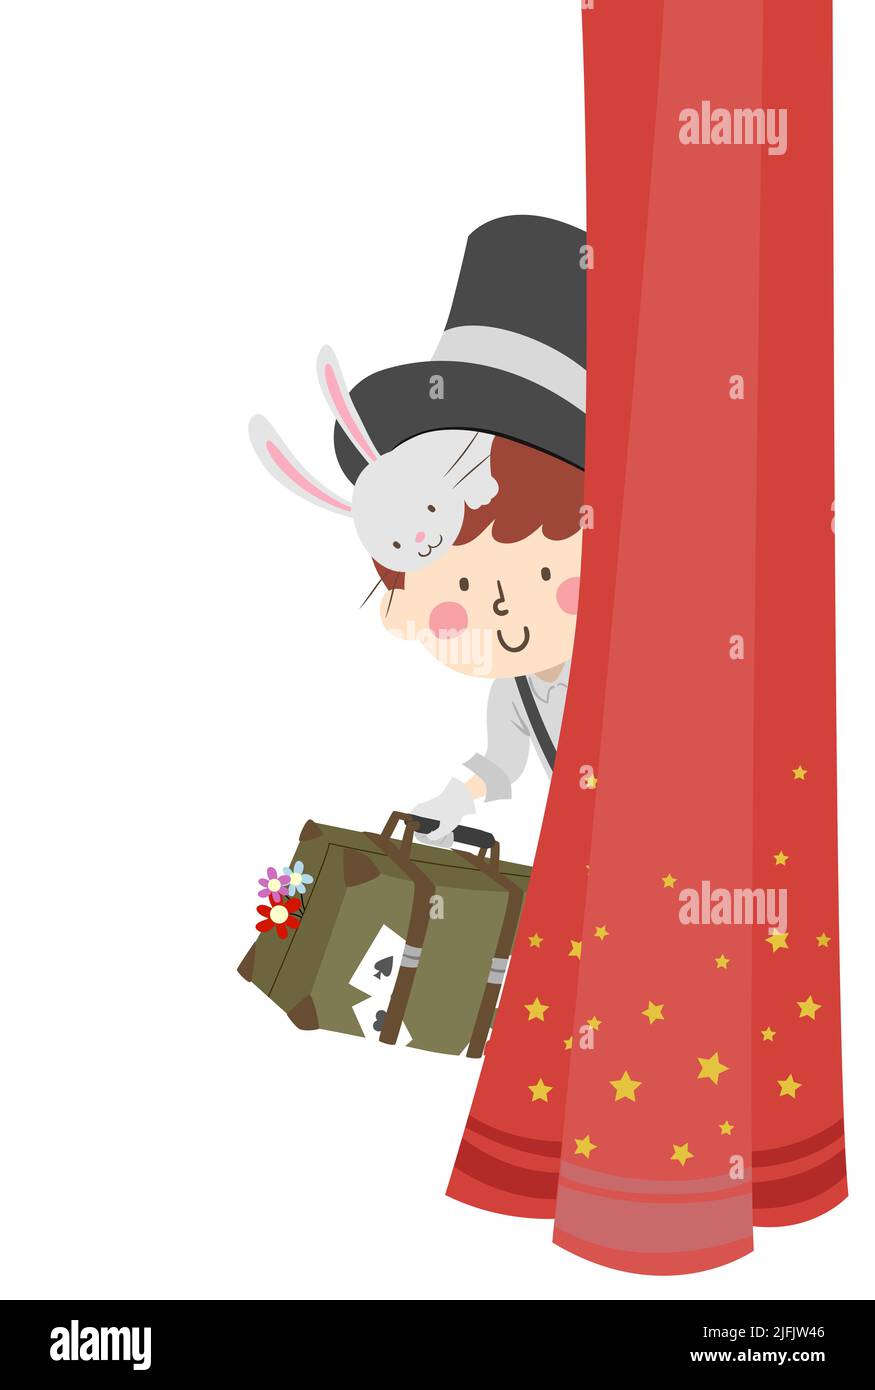 Ilustración de Kid Boy Magician con sombrero superior con conejo en la cabeza, con una maleta con cartas mágicas y flores escondida detrás de la cortina roja Foto de stock